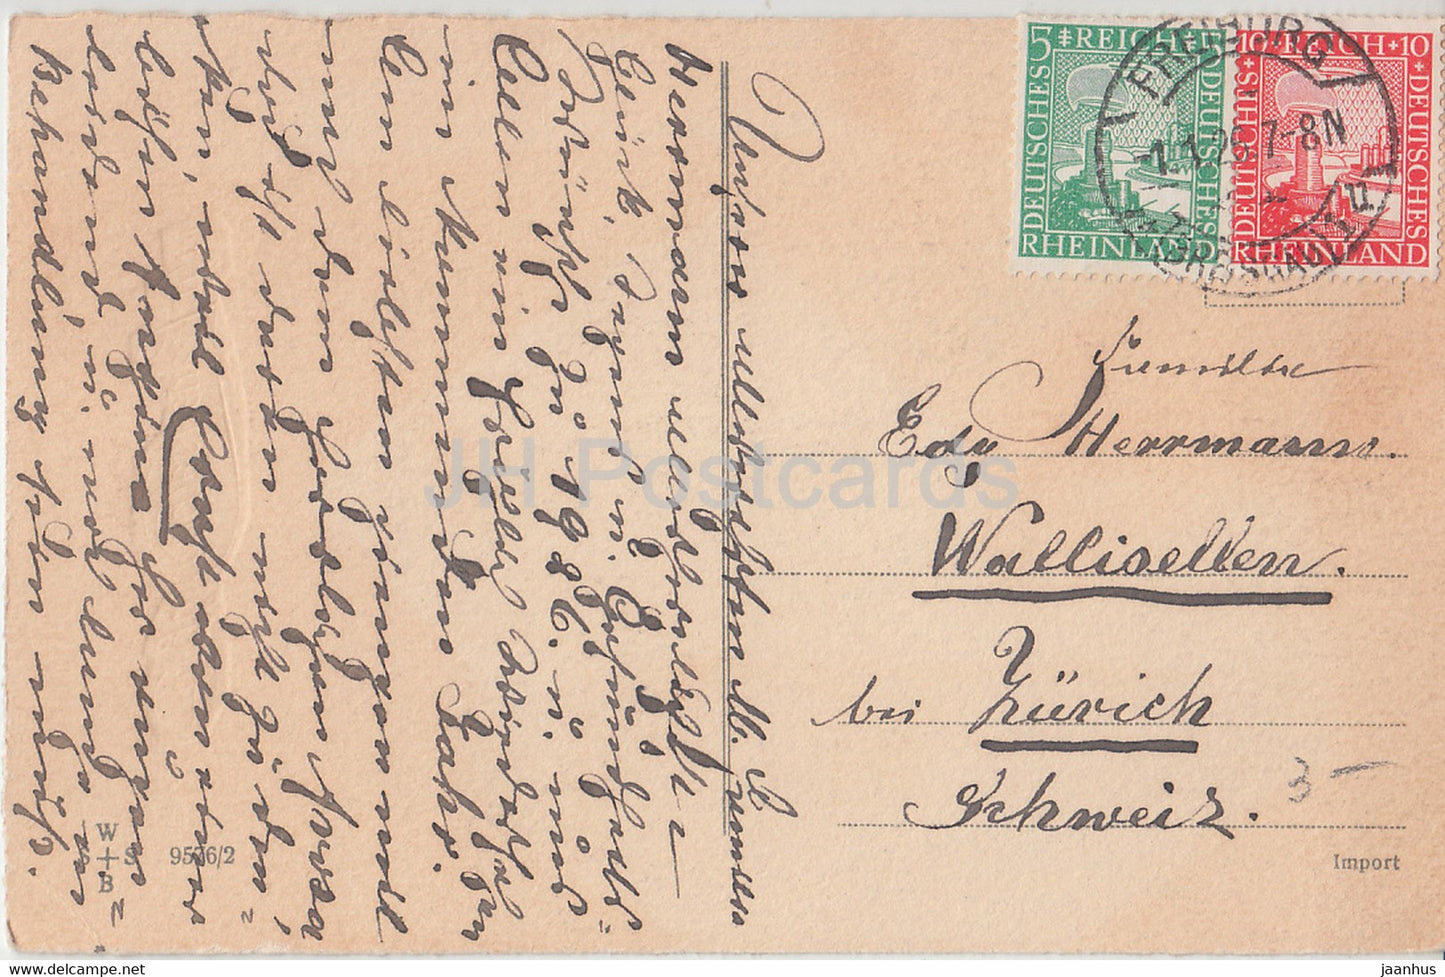 Neujahrsgrußkarte – Ein glückliches Neues Jahr – Kinder – WSSB 9576/2 – alte Postkarte – 1926 – Deutschland – gebraucht